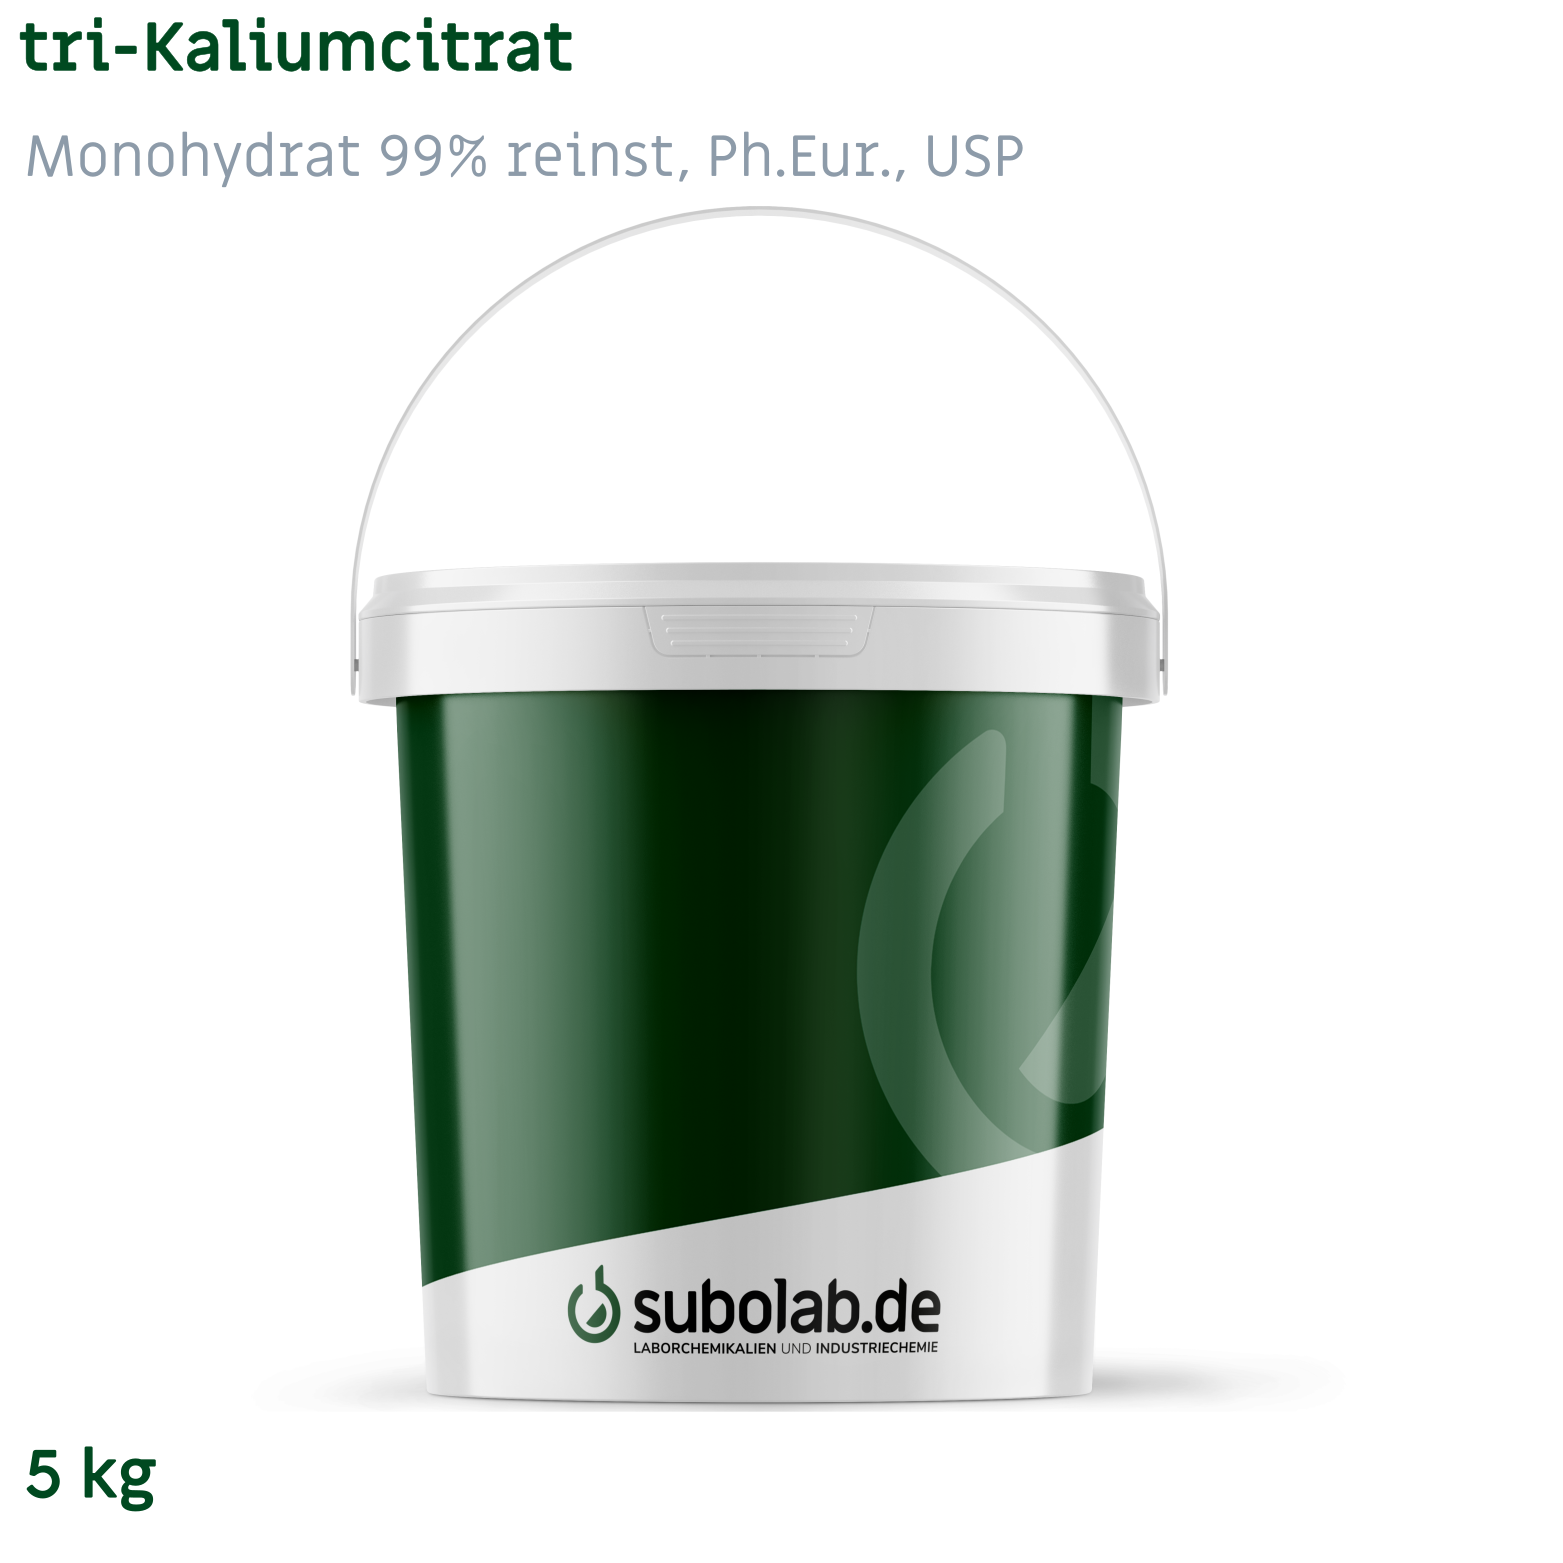 Bild von tri-Kaliumcitrat - Monohydrat 99% reinst, Ph.Eur., USP (5 kg)